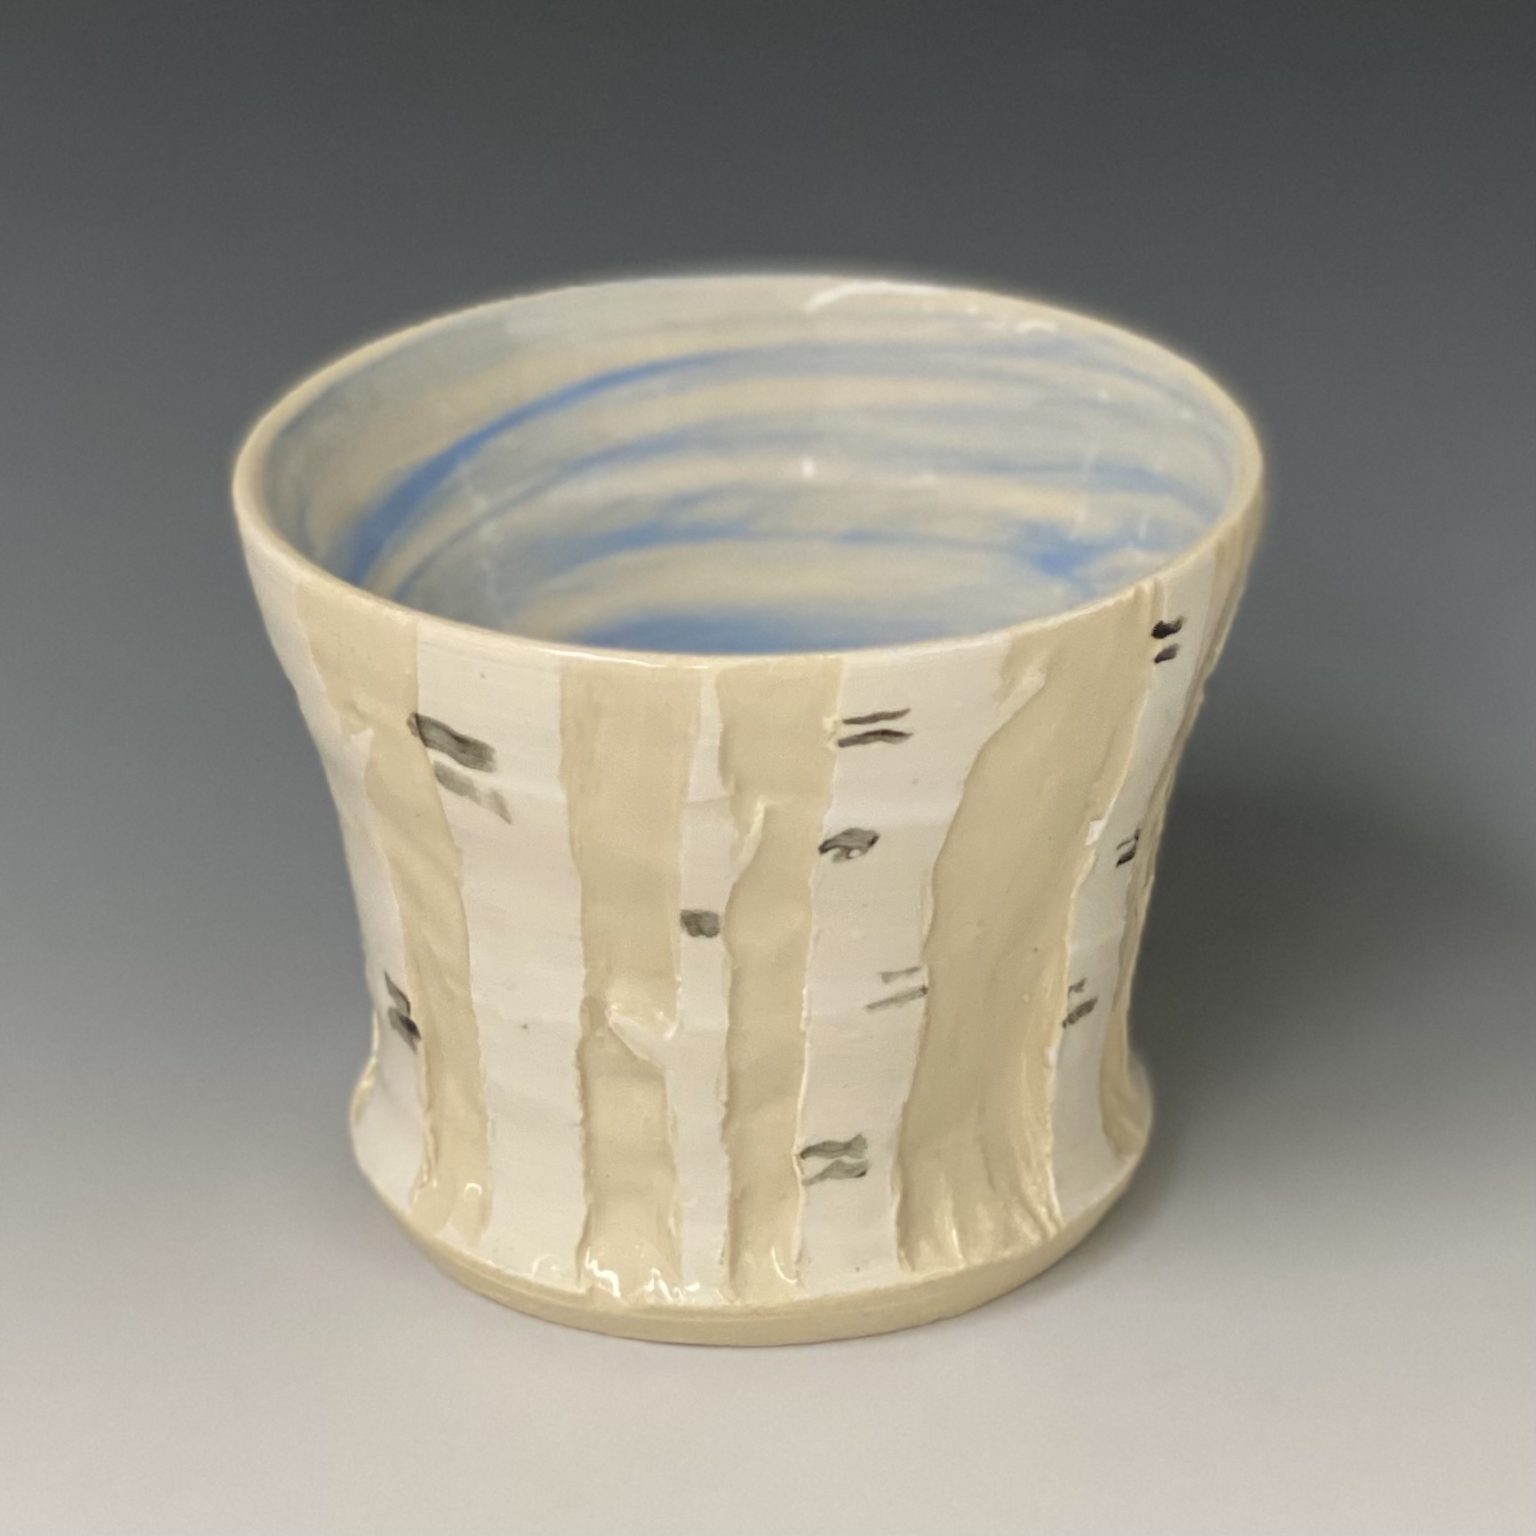 Five Students Win Scholastic Art Awards near syracuse ny image of pottery